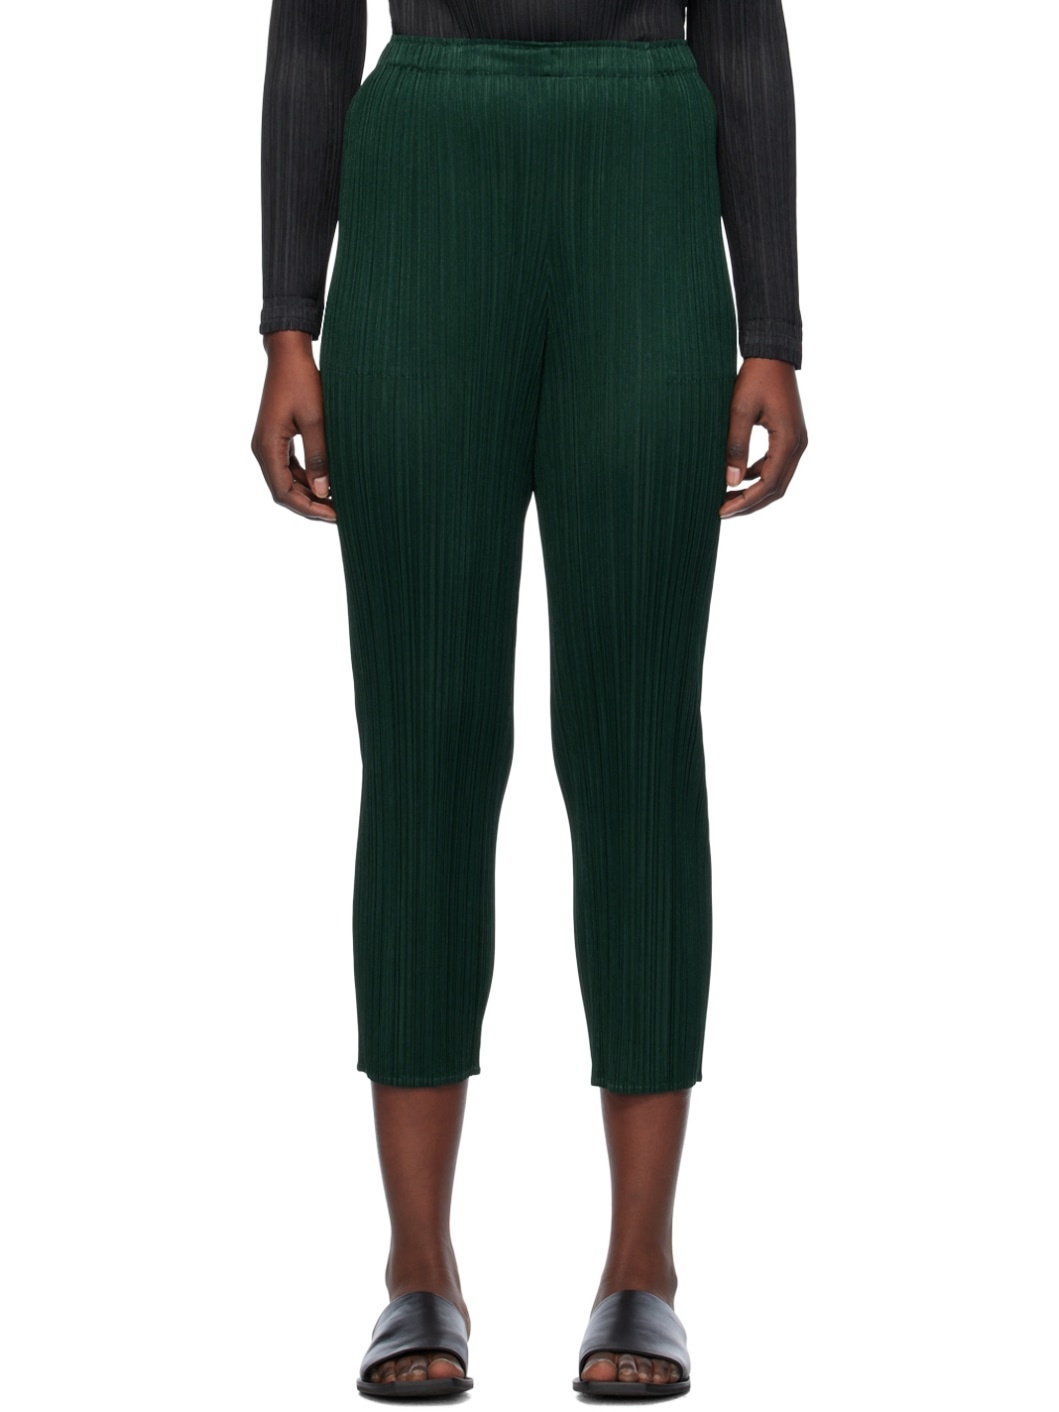 Green Basics Trousers - 1